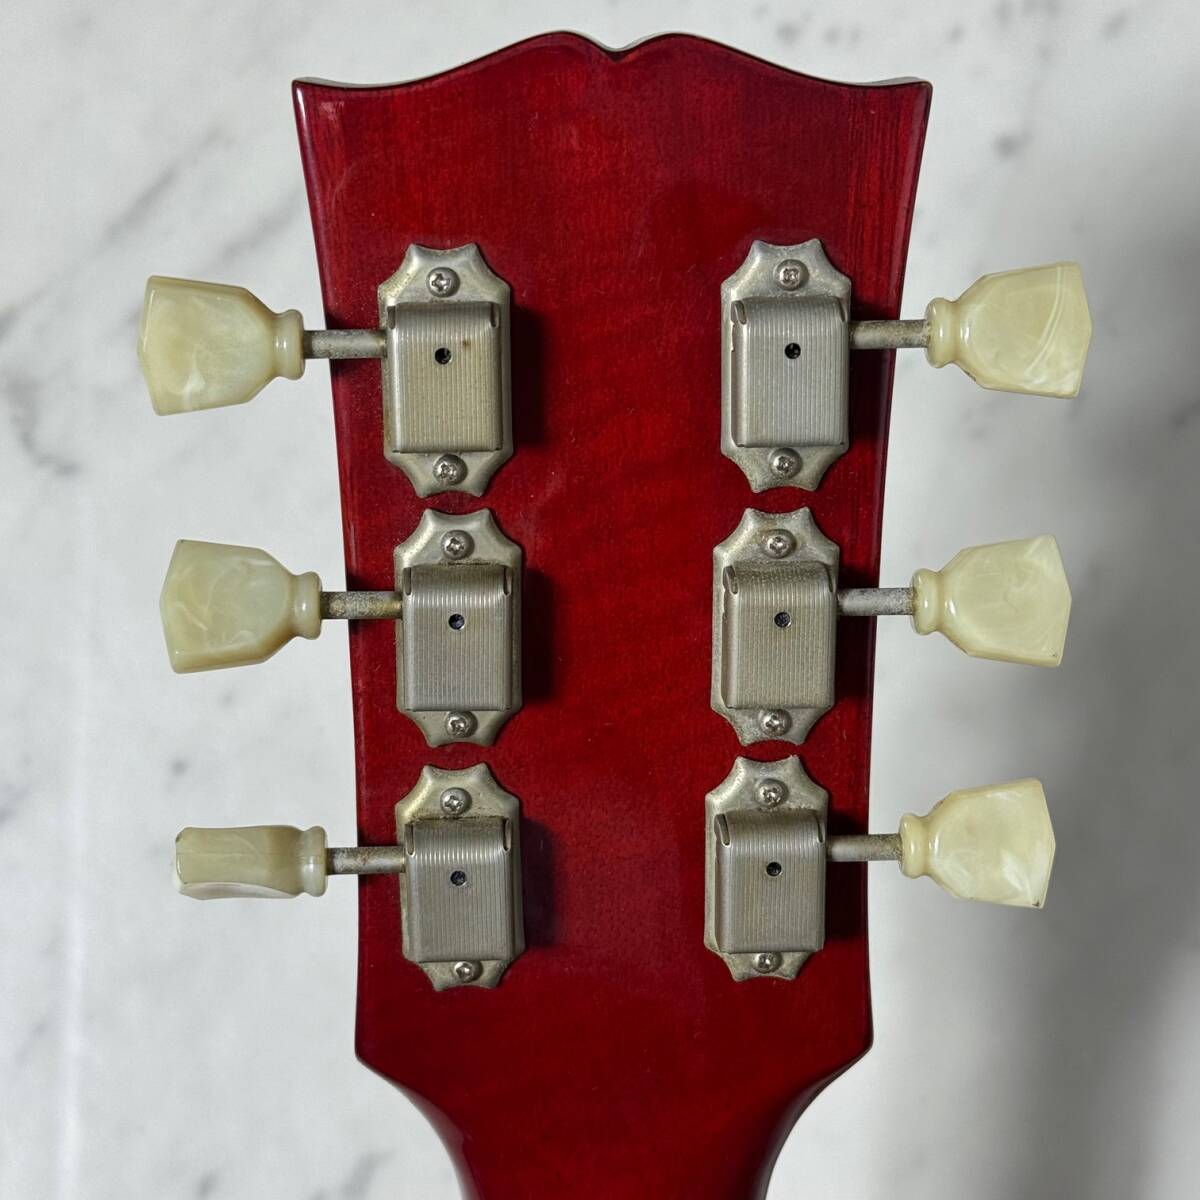 Orville Gibson Les Paul STANDARD 日本製 LPS-75 オービル ギブソン レスポール スタンダード レッドサンバースト